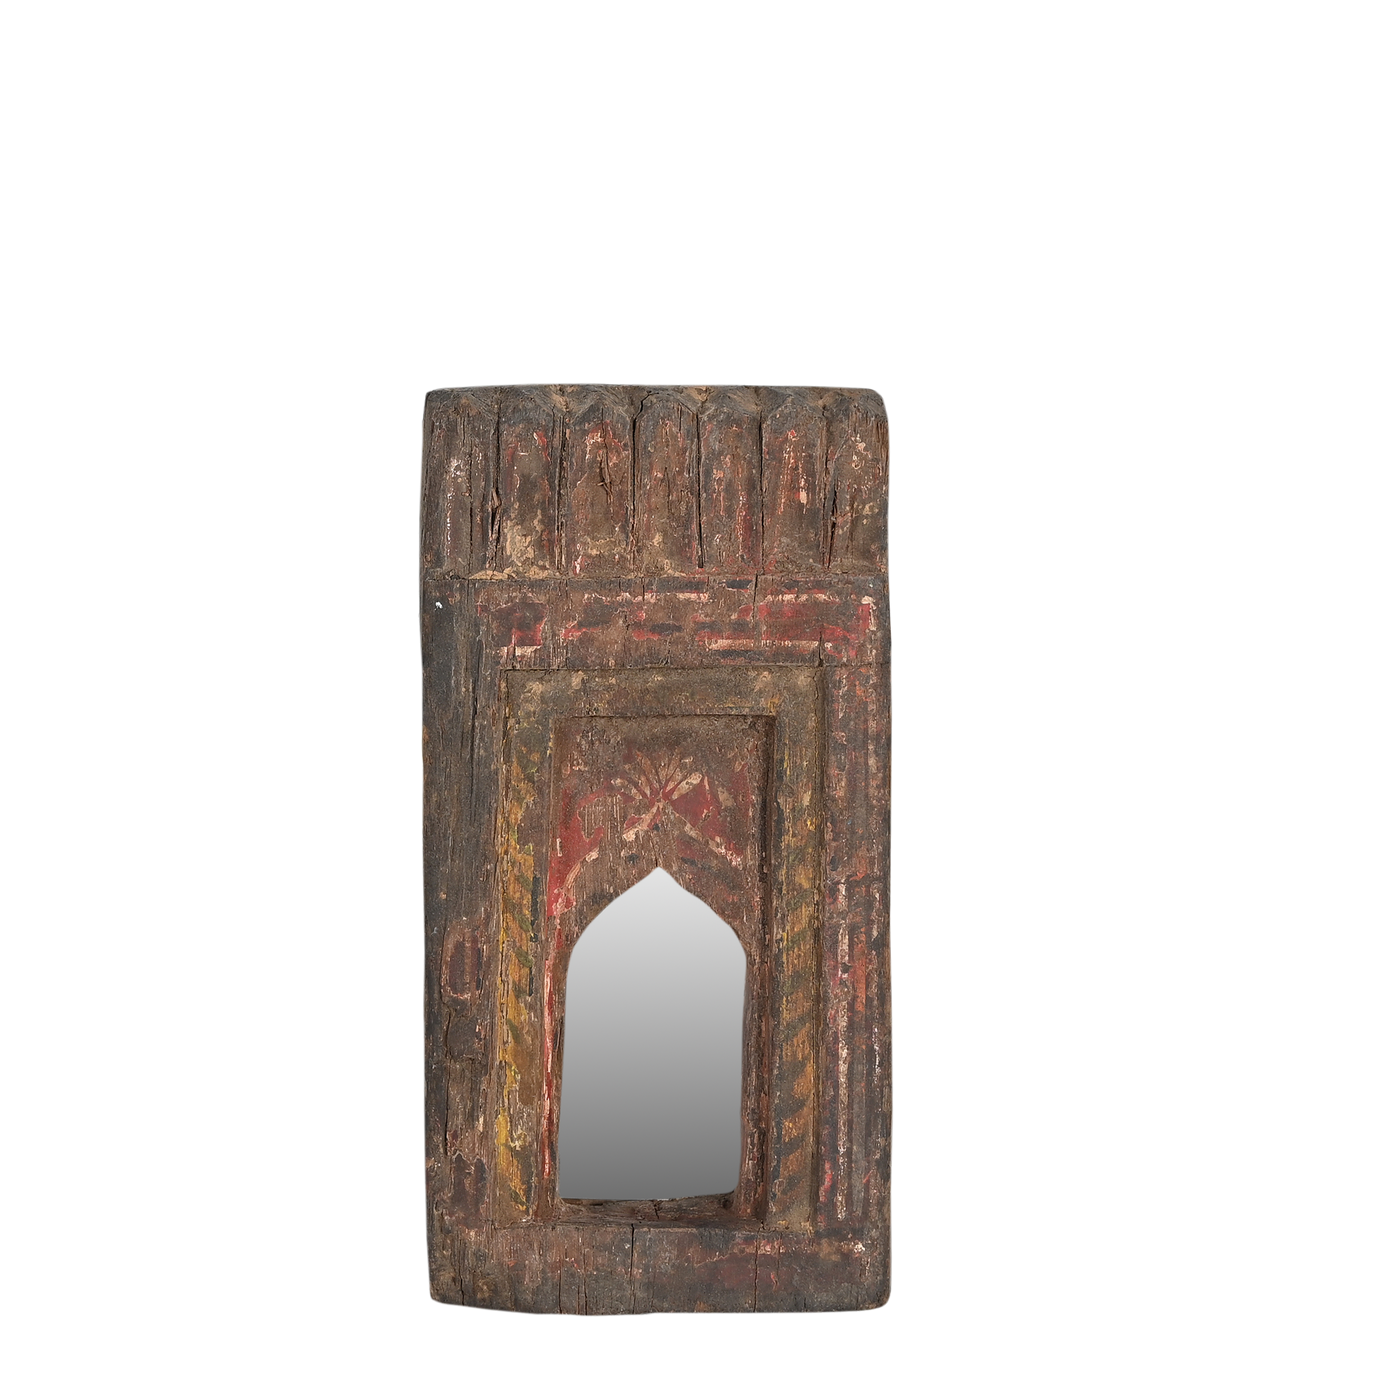 Mandir - Temple mirror n°34